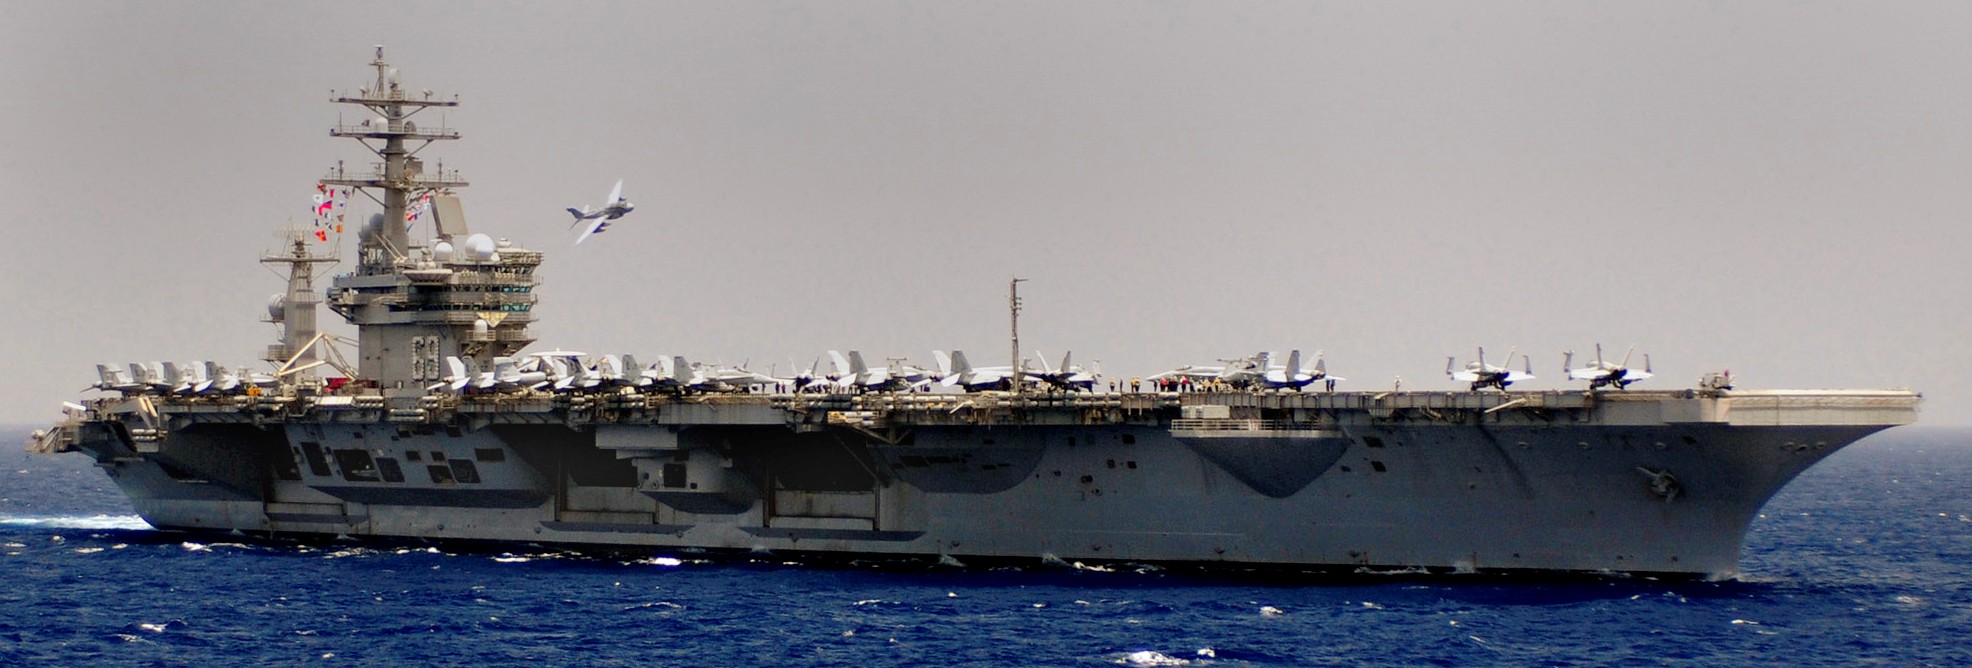 uss dwight d. eisenhower cvn-69 aircraft carrier air wing cvw-7 2010 163